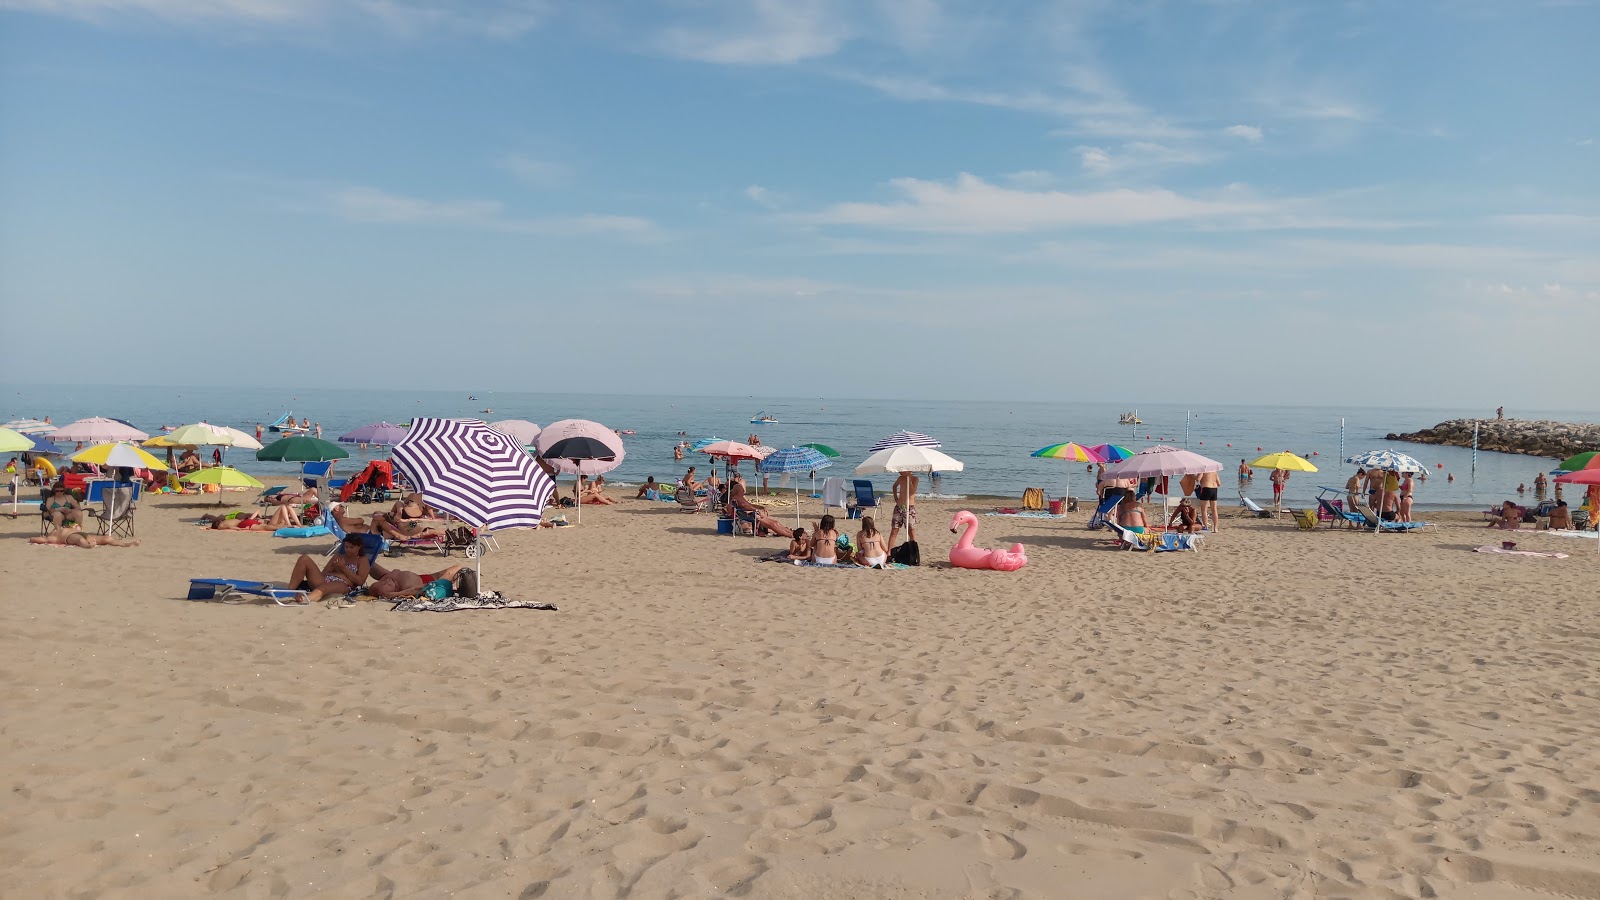 Spiaggia di Cavallino Treporti的照片 便利设施区域